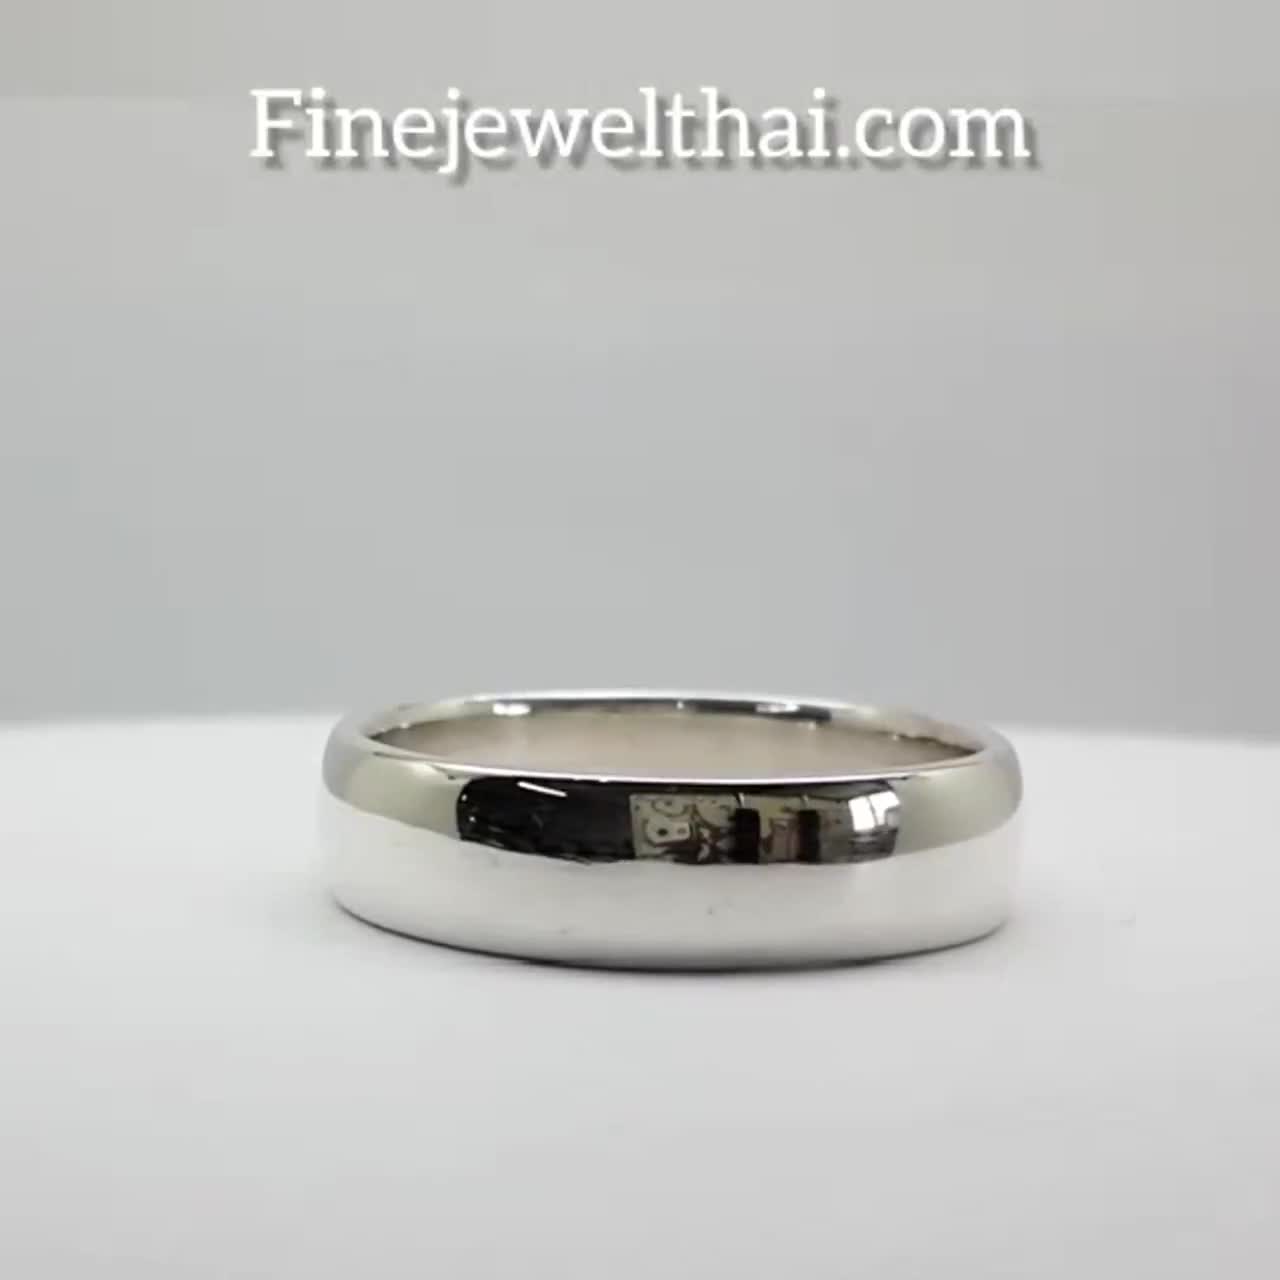 finejewelthai-แหวนเกลี้ยง-แหวนคู่-แหวนหมั้น-แหวนแต่งงาน-couple-silver-wedding-ring-r134500